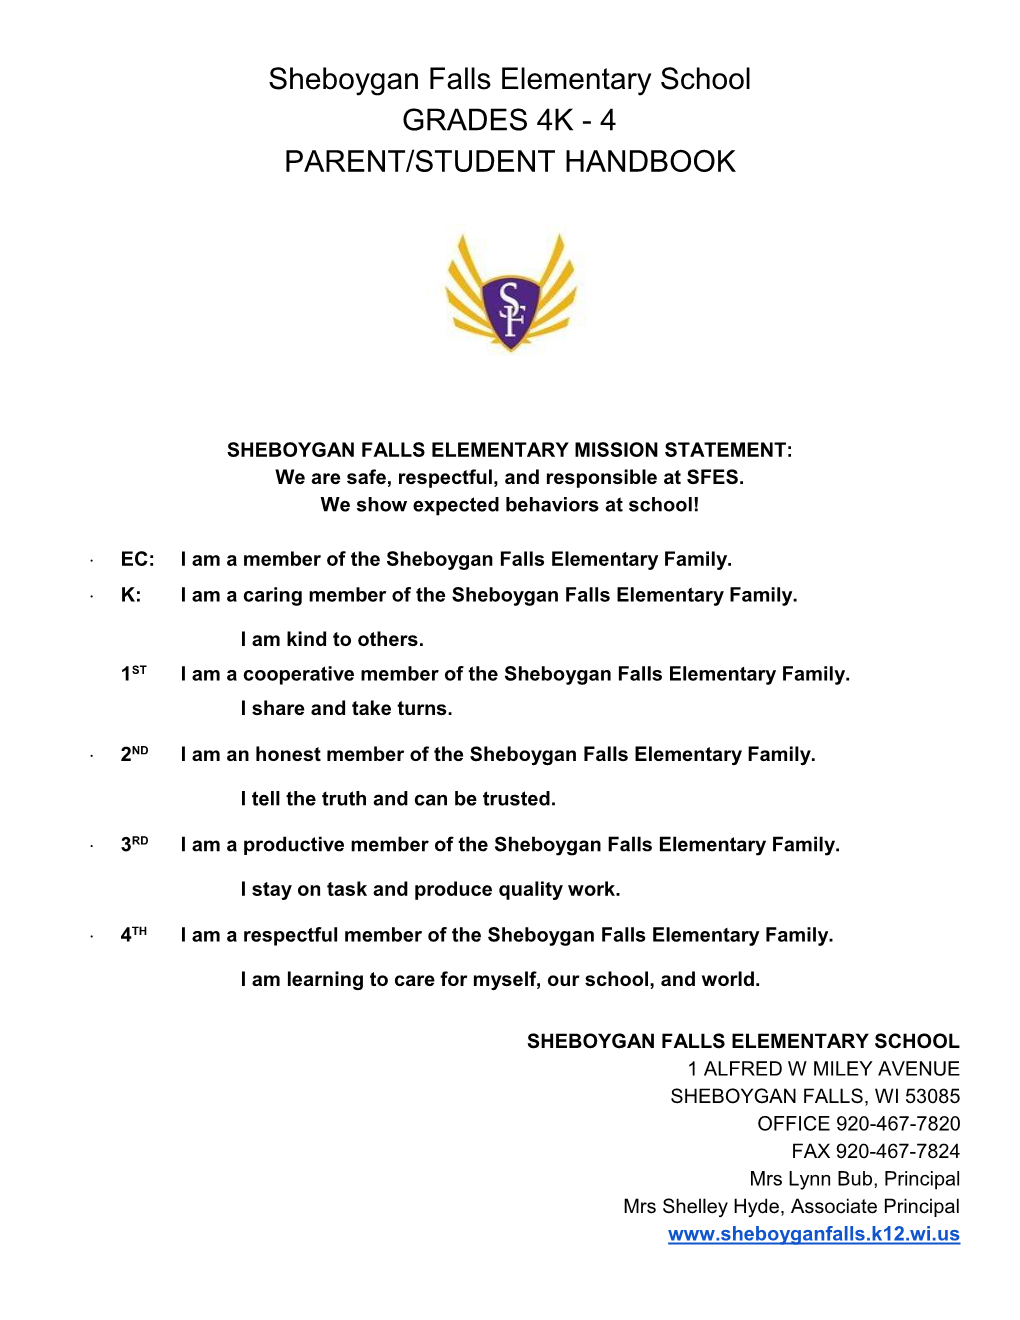 Sheboygan Falls Elementary School GRADES 4K - 4 PARENT/STUDENT HANDBOOK